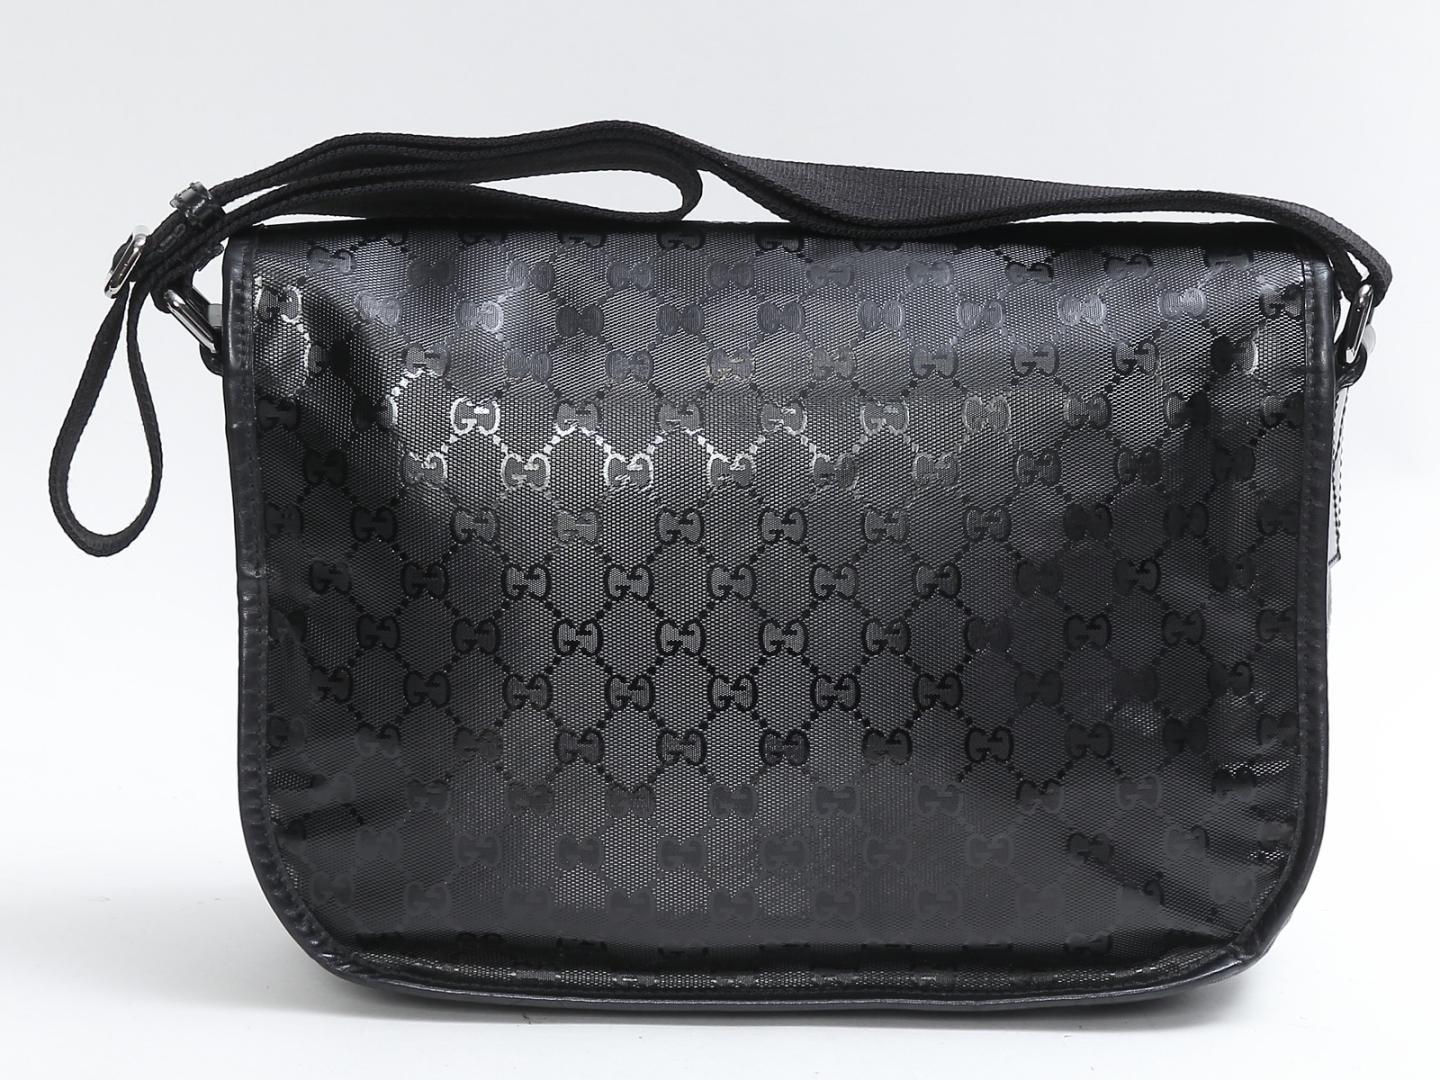 Diese Gucci-Messenger-Tasche ist aus Gucci-Textil mit Monogramm-Impressum gefertigt. Die Tasche hat einen schwarzen Lederbesatz, einen verstellbaren schwarzen Nylon-Körperriemen und polierte dunkel-silberne Beschläge. Der Schnallenverschluss an der